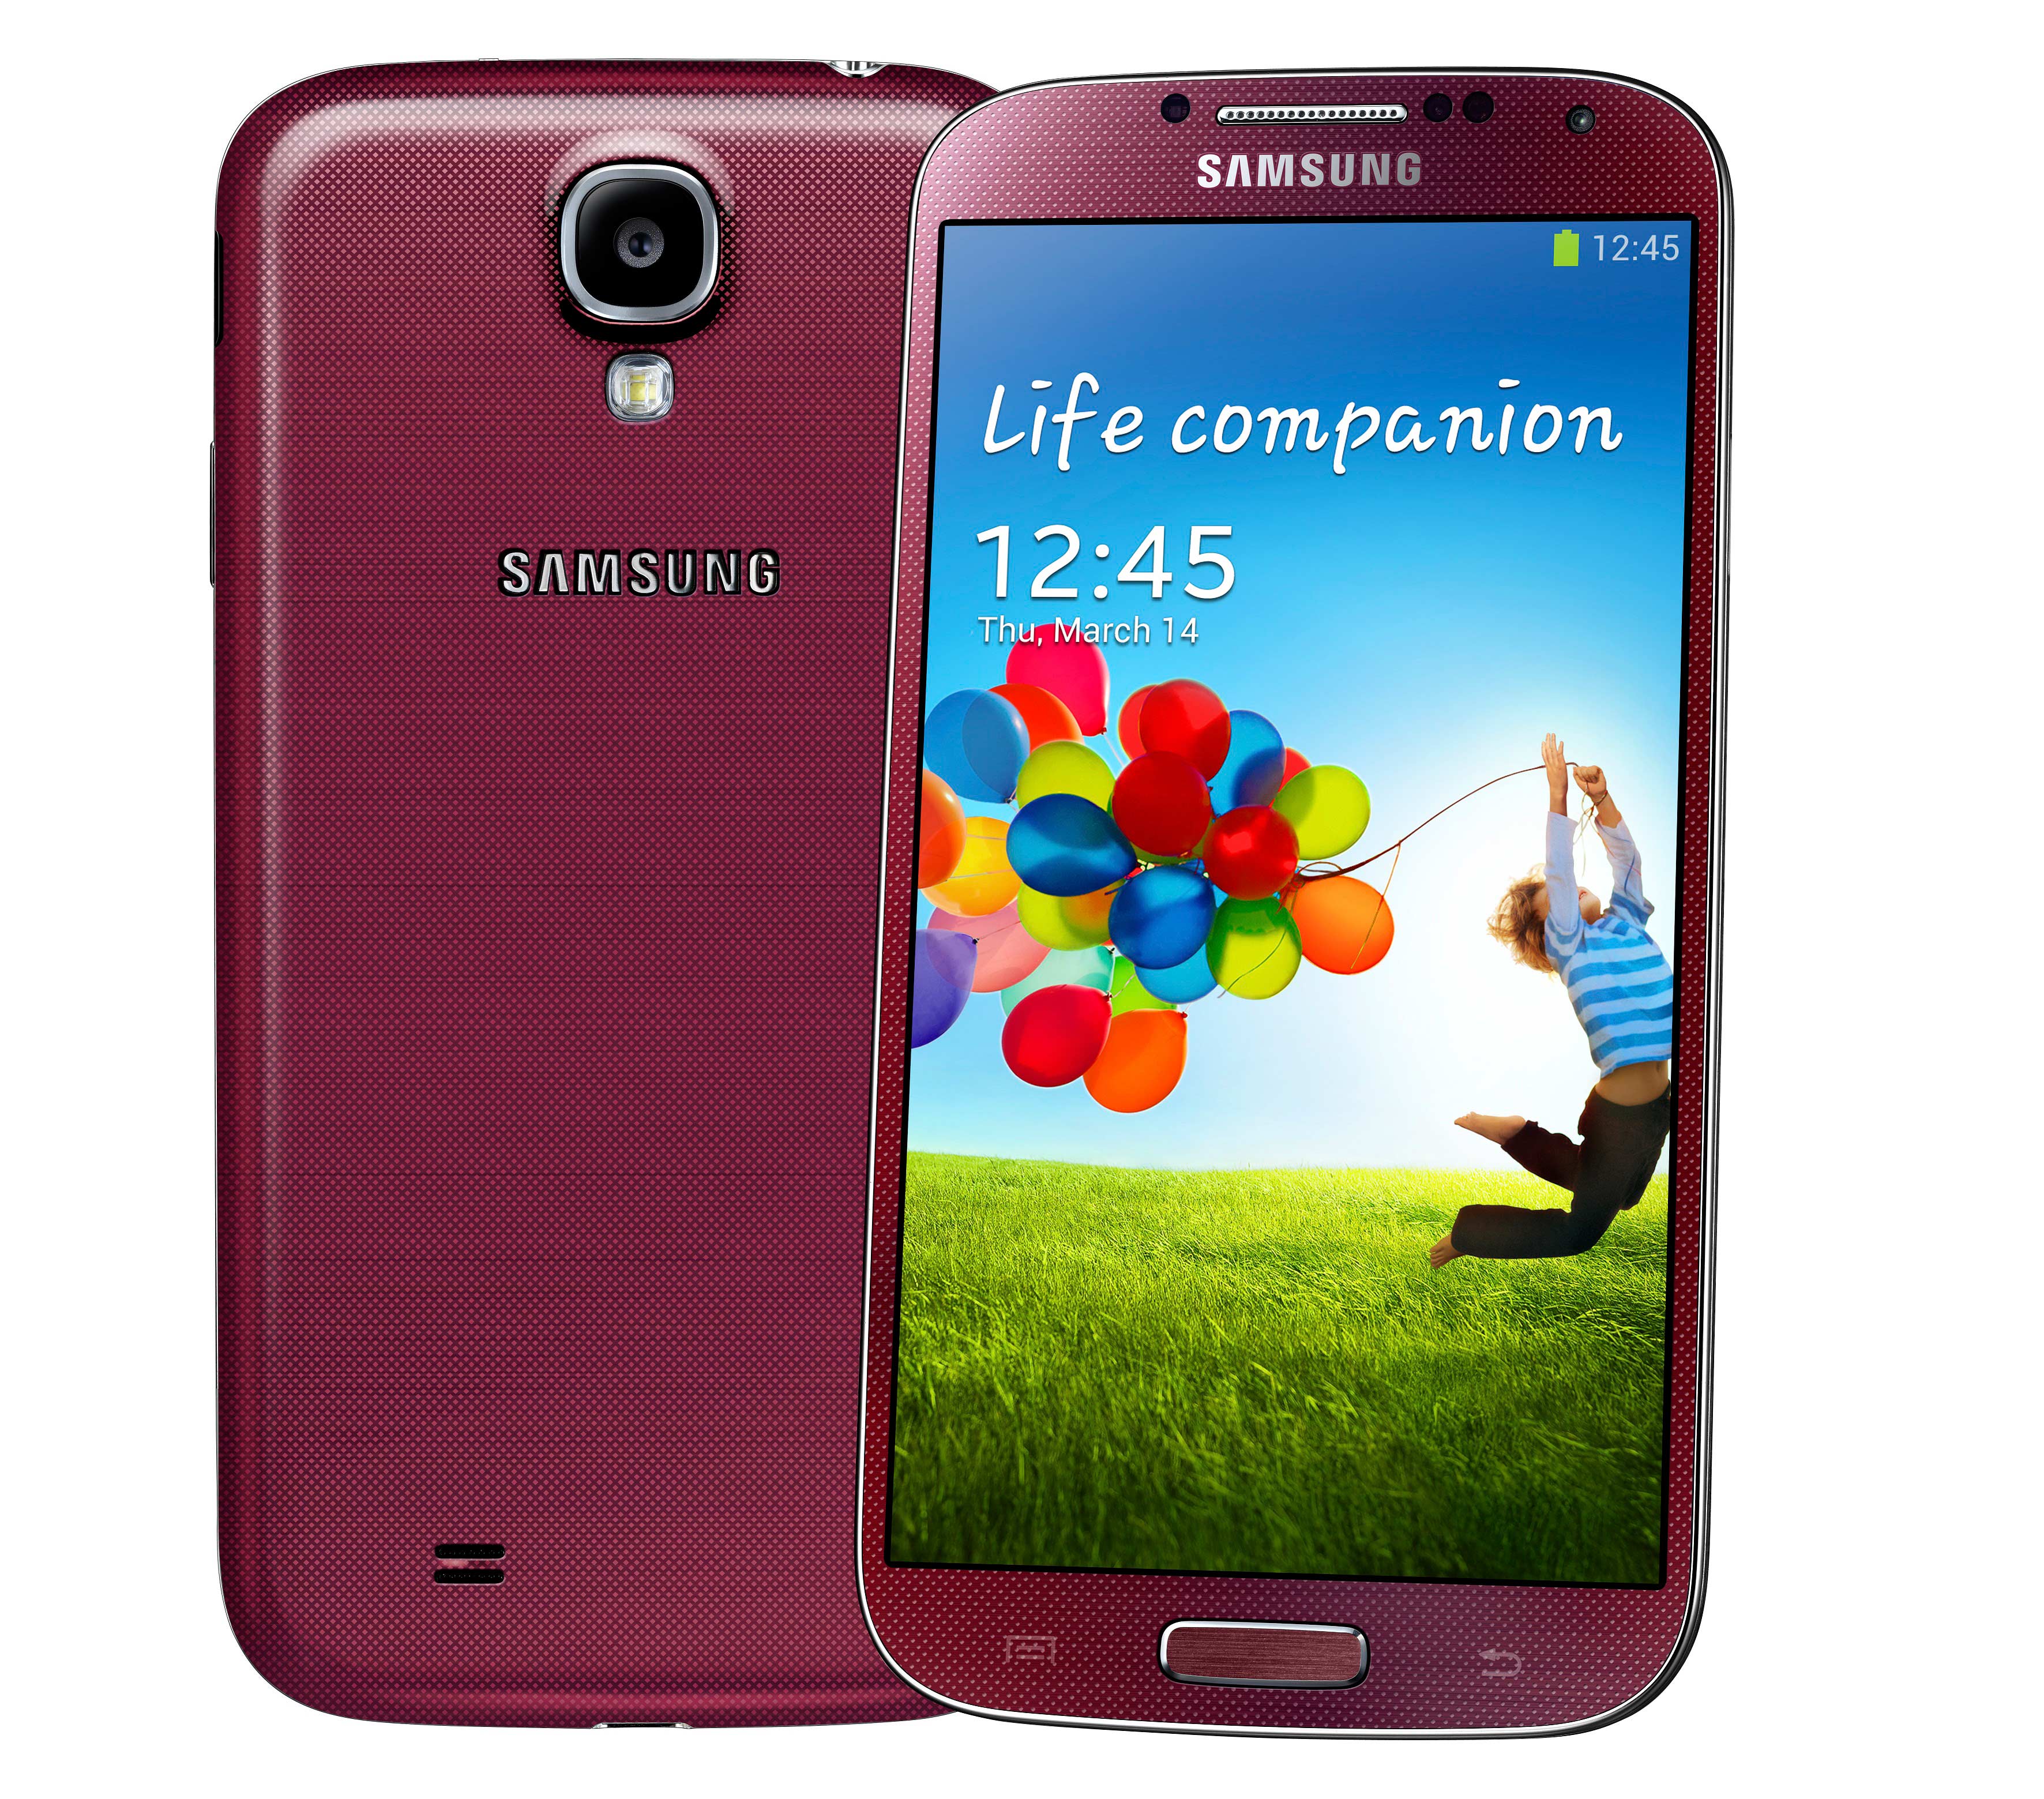 Samsung s 14. Samsung Galaxy s4 gt-i9500. Samsung Galaxy s4 16gb i9500. Samsung Galaxy s4 gt-i9500 16gb. Samsung Galaxy s4 2013.